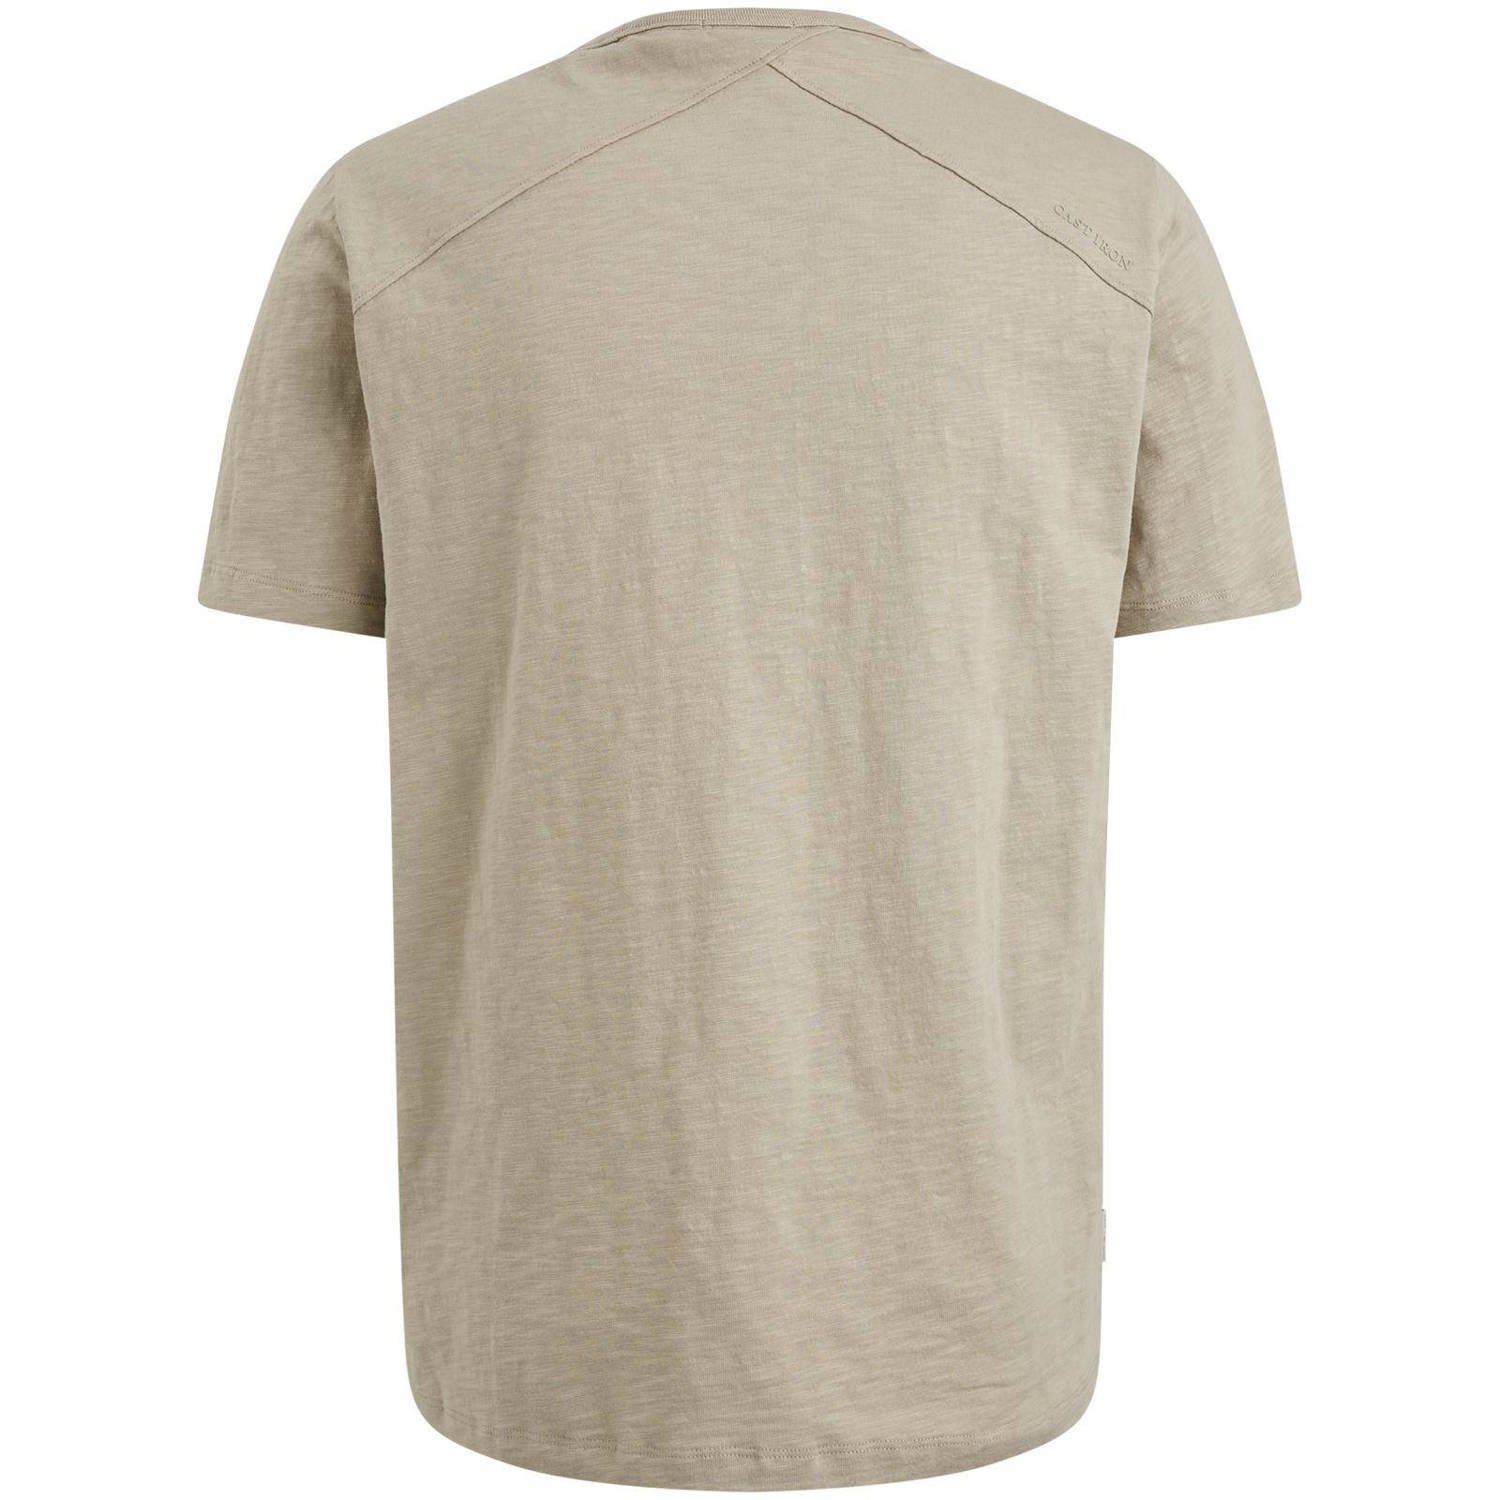 Cast Iron regular fit T-shirt beige